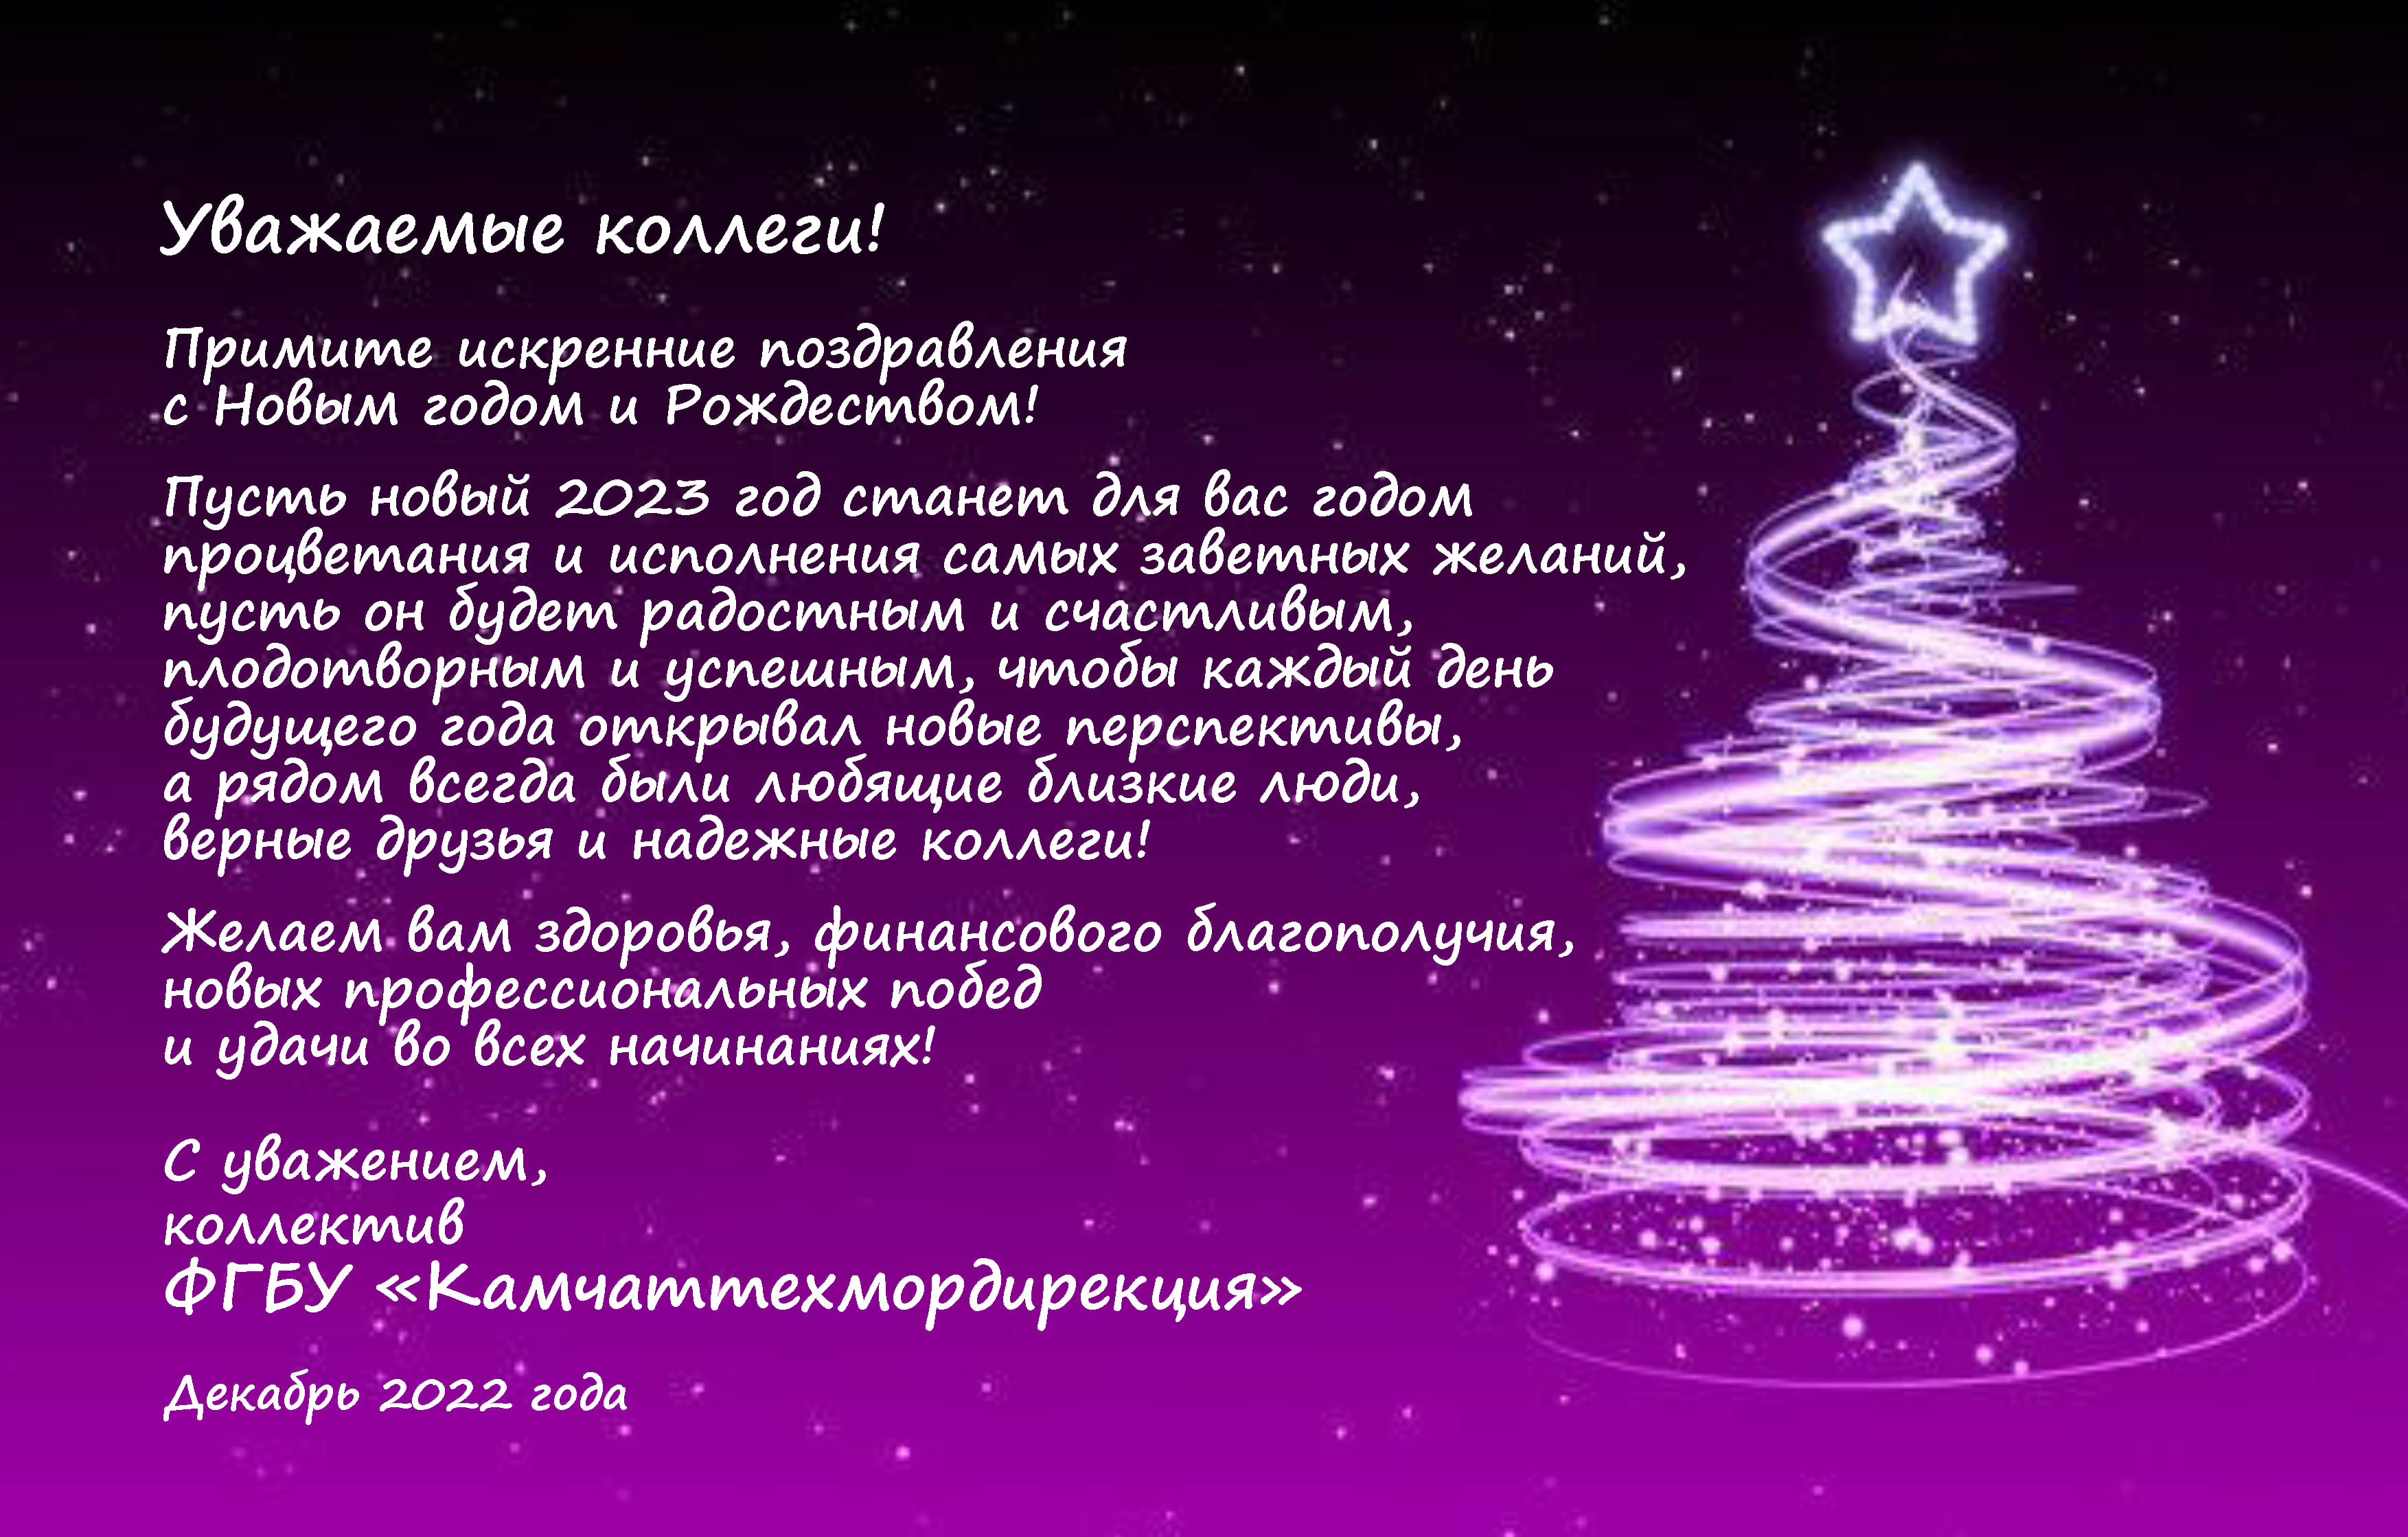 ФГБУ «Камчаттехмордирекция» поздравляет с Новым годом и Рождеством!